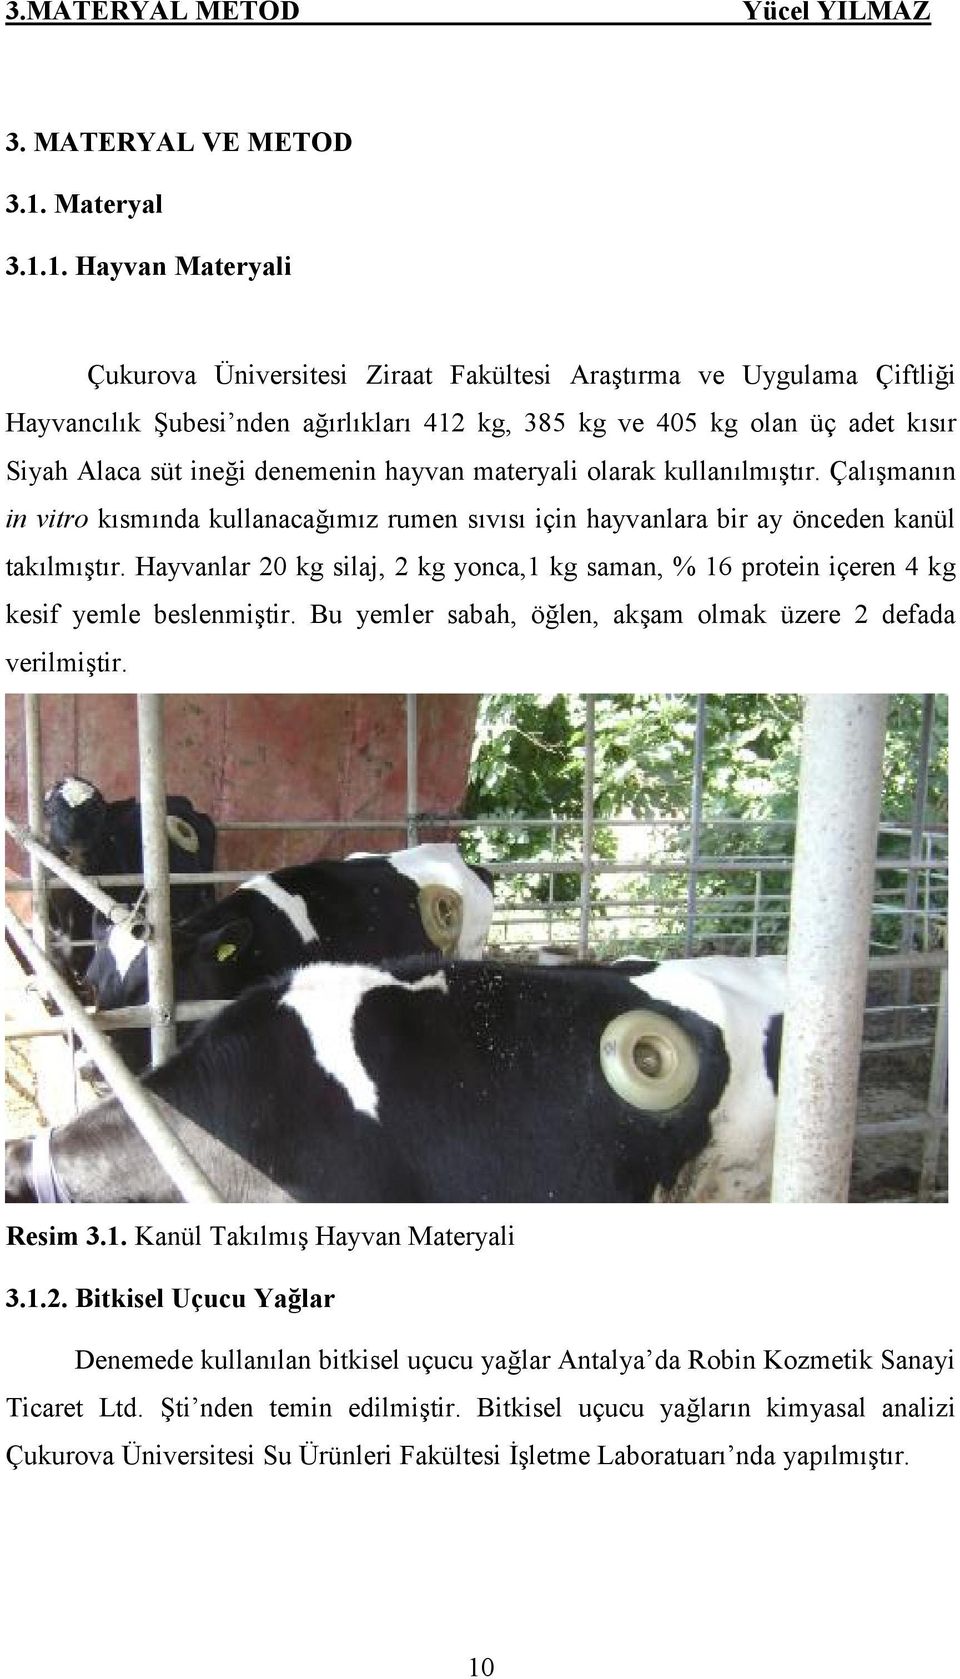 1. Hayvan Materyali Çukurova Üniversitesi Ziraat Fakültesi Araştırma ve Uygulama Çiftliği Hayvancılık Şubesi nden ağırlıkları 412 kg, 385 kg ve 405 kg olan üç adet kısır Siyah Alaca süt ineği